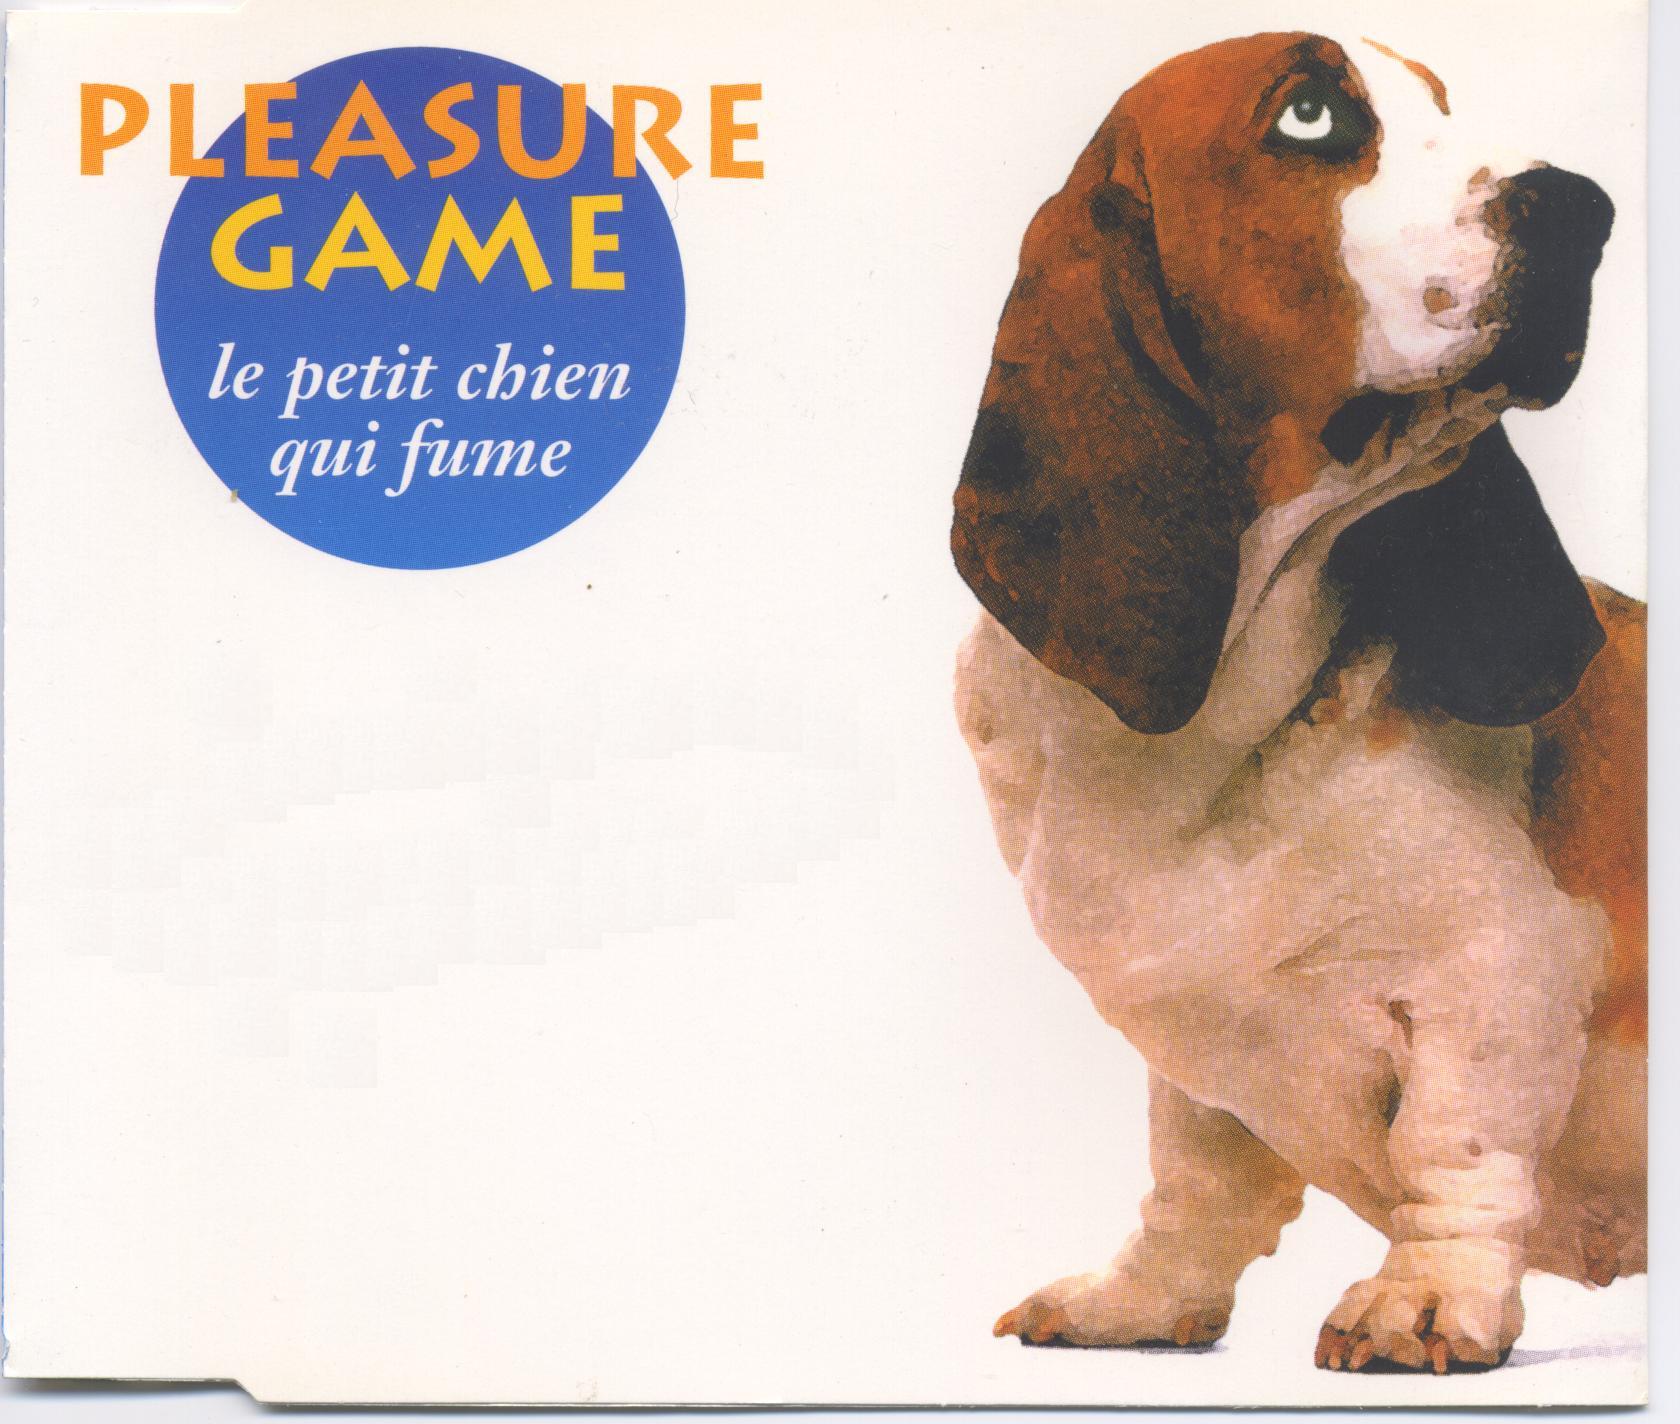 Pleasure game-le petit chien qui fume-(190 339.2)-cdm-1993-idf